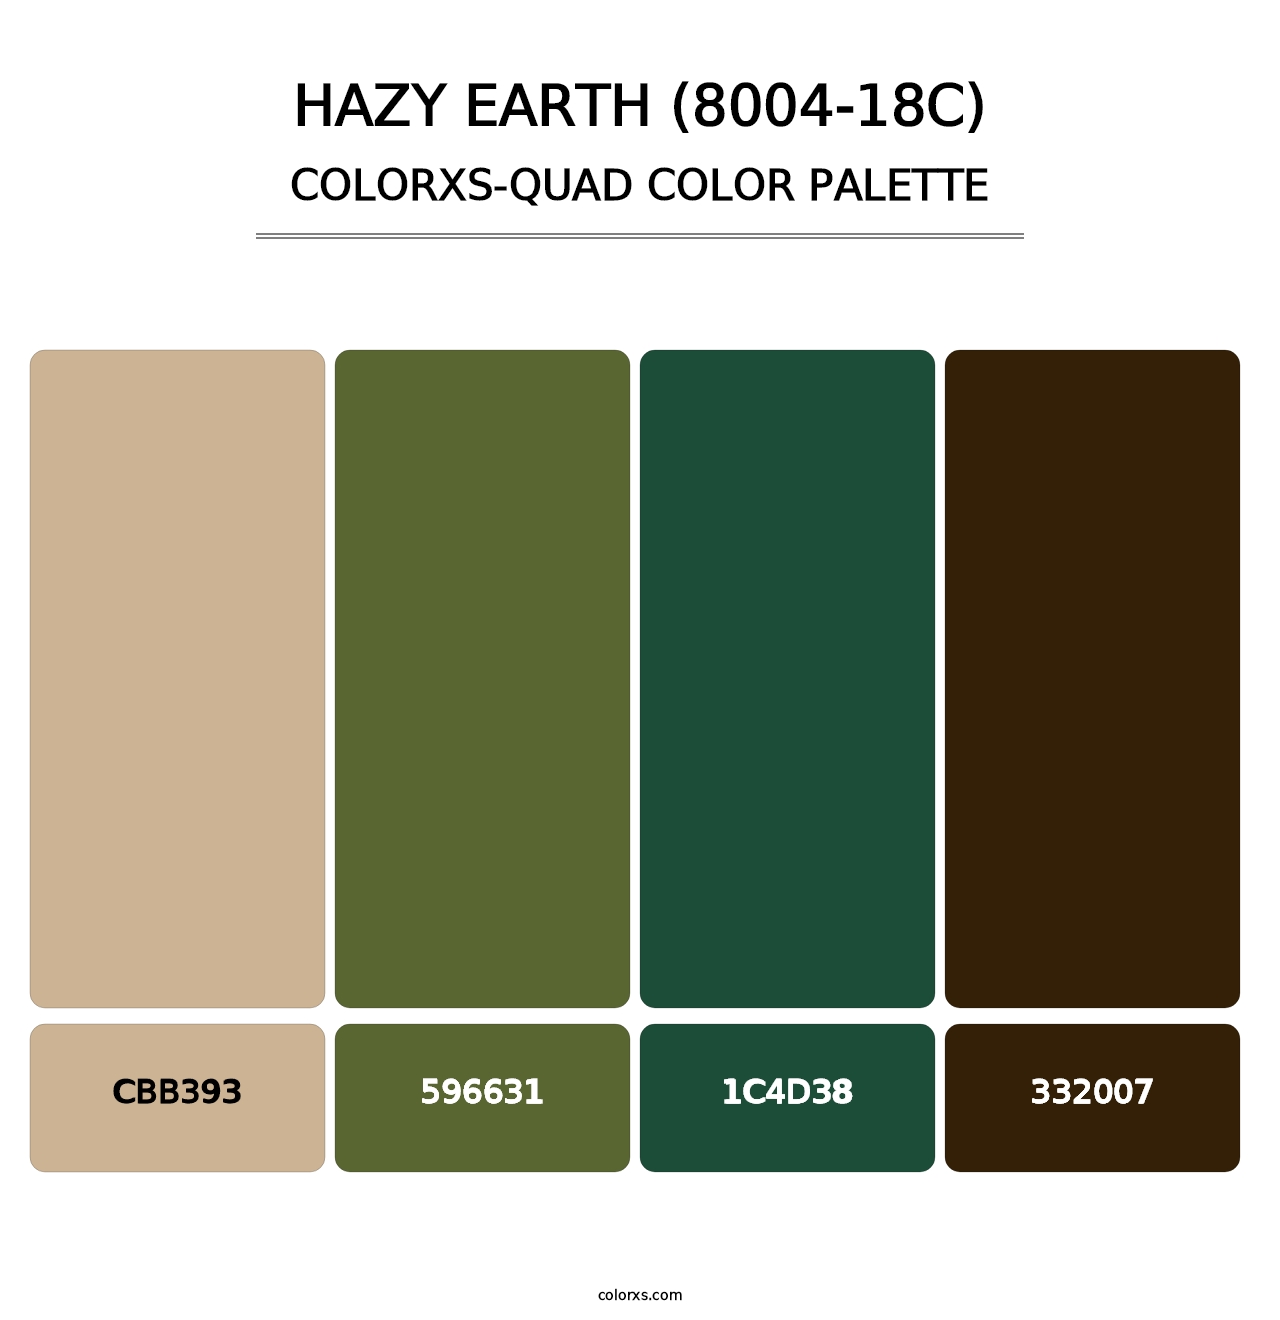 Hazy Earth (8004-18C) - Colorxs Quad Palette